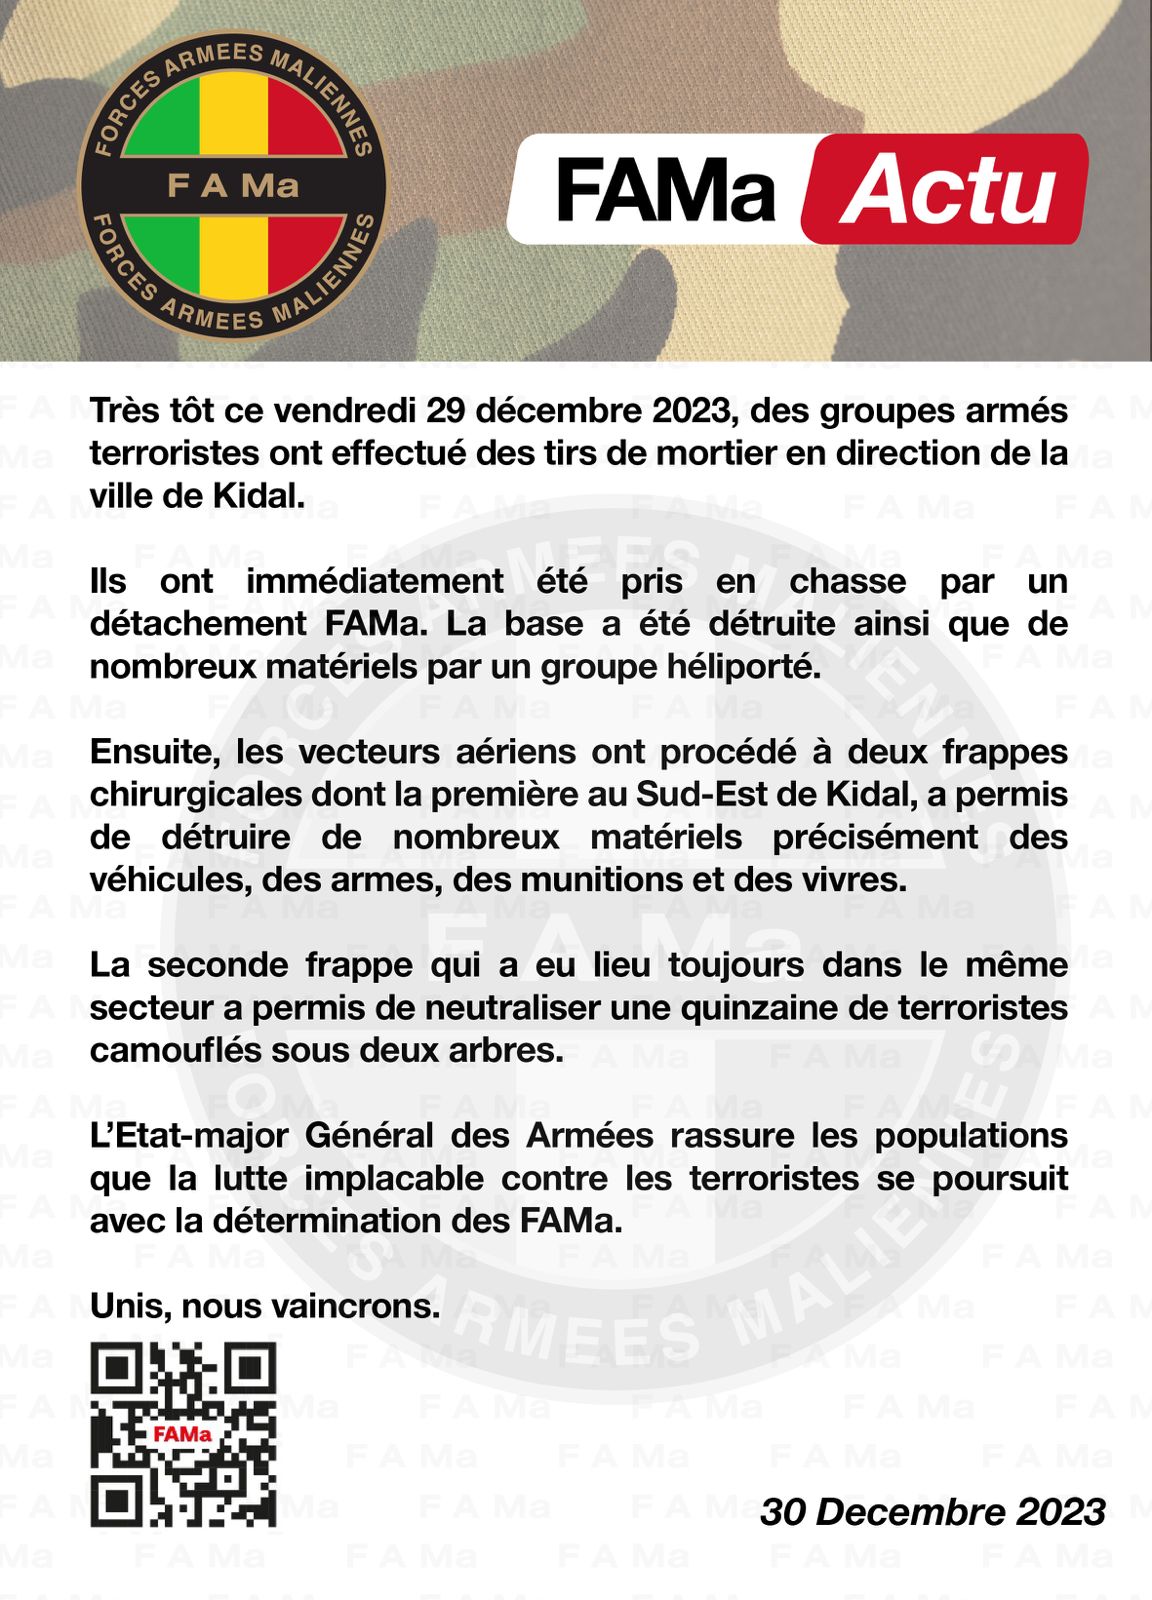  FAMa Actu ! DES TIRS DE MORTIER EN DIRECTION DE LA VILLE DE KIDAL CE VENDREDI 29 DECEMBRE 2023 PAR DES GROUPES ARMES TERRORISTES.